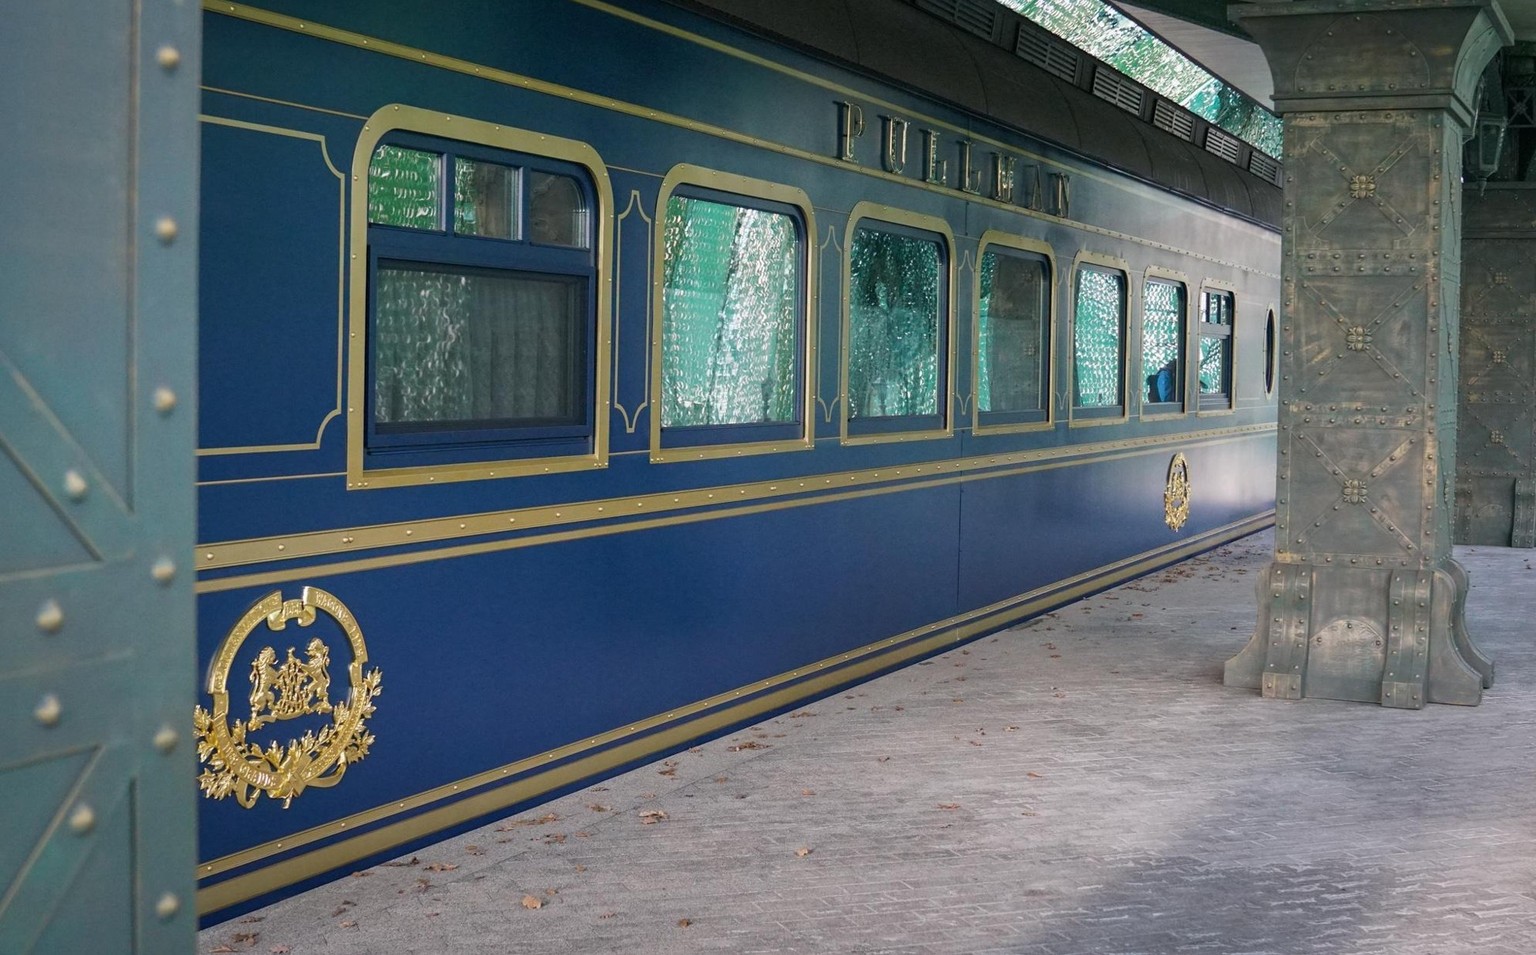 Ceci est un train. Dans une gare. En Ukraine. Construite dans un jardin (si, si).